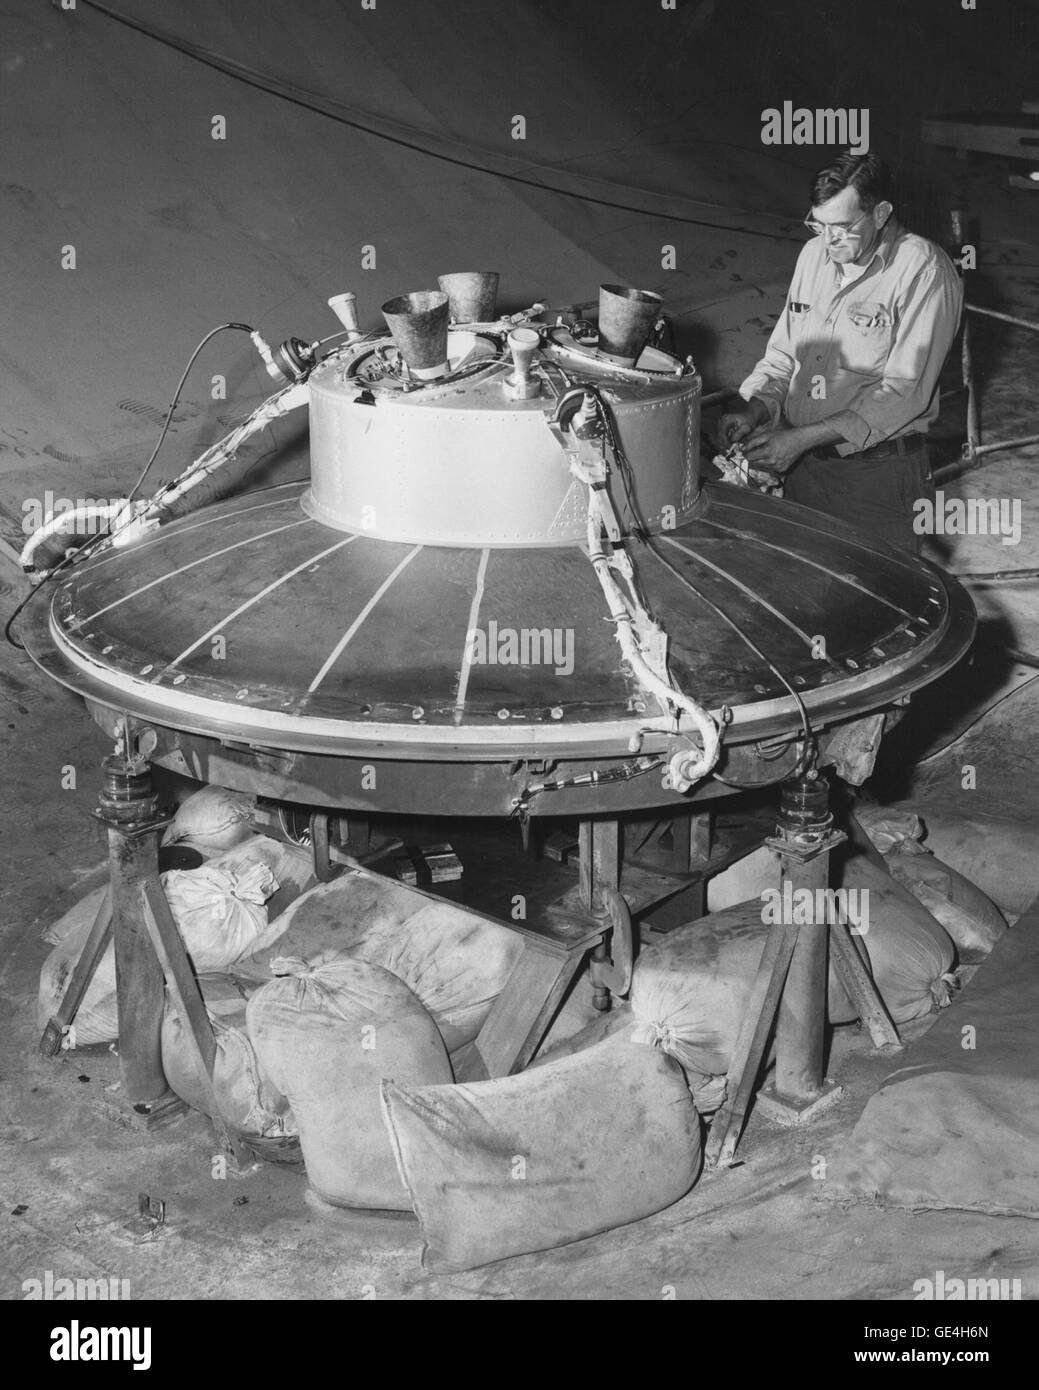 (16 settembre 1960) Il retrò e Posigrade Package per il veicolo spaziale di mercurio. Questo è stato utilizzato per de-orbita la navicella spaziale alla fine della missione. Immagine # : C1960-54344 Foto Stock